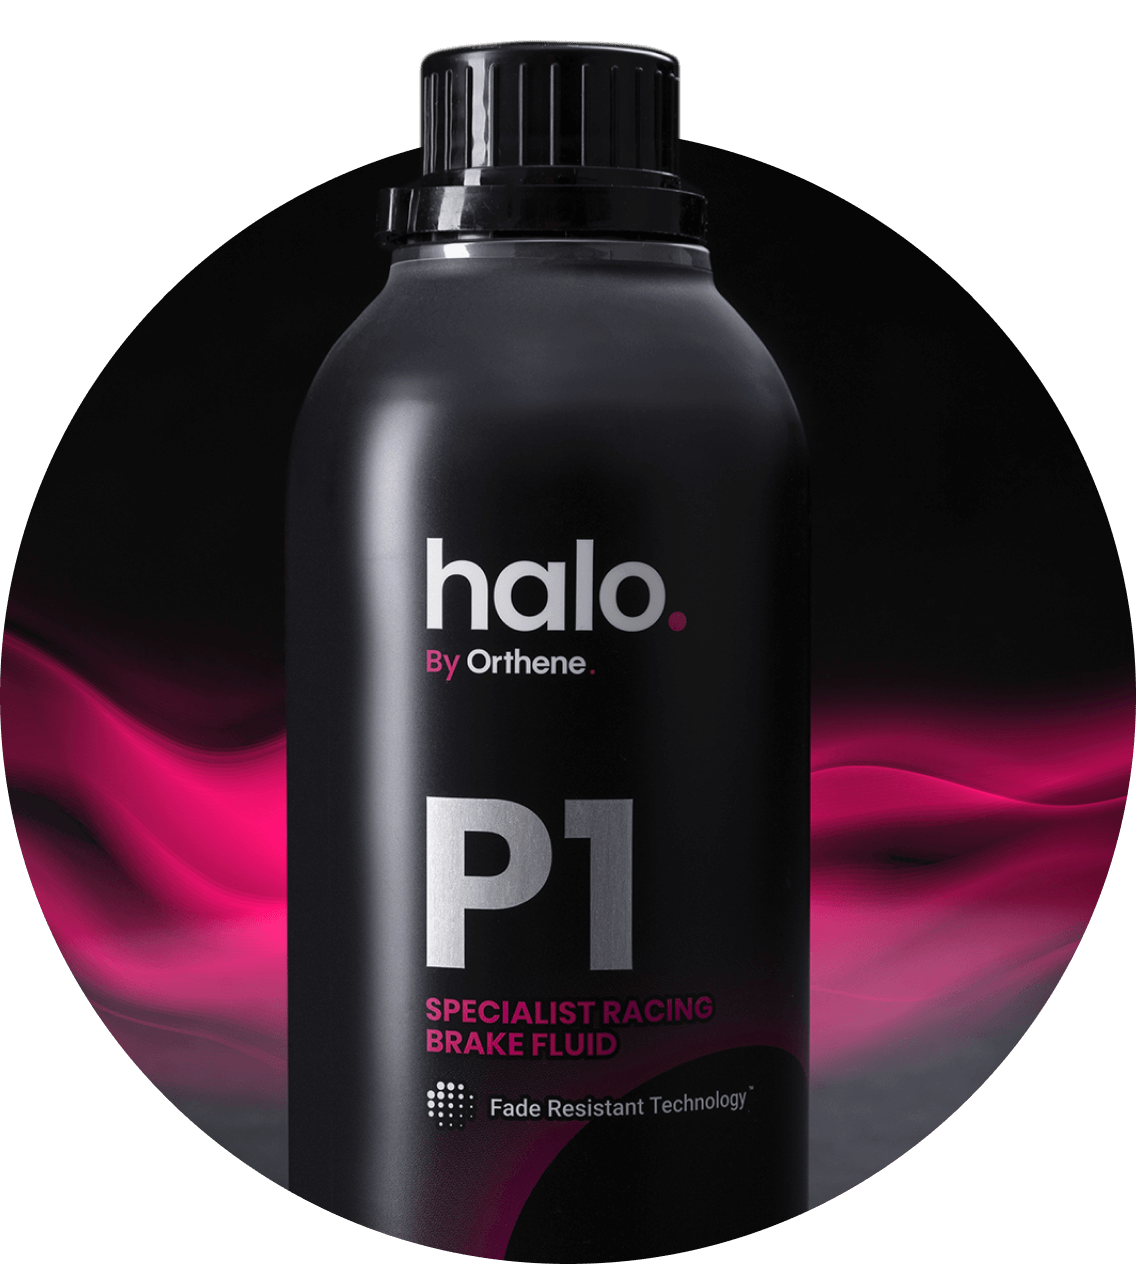 Halo P1 bottle